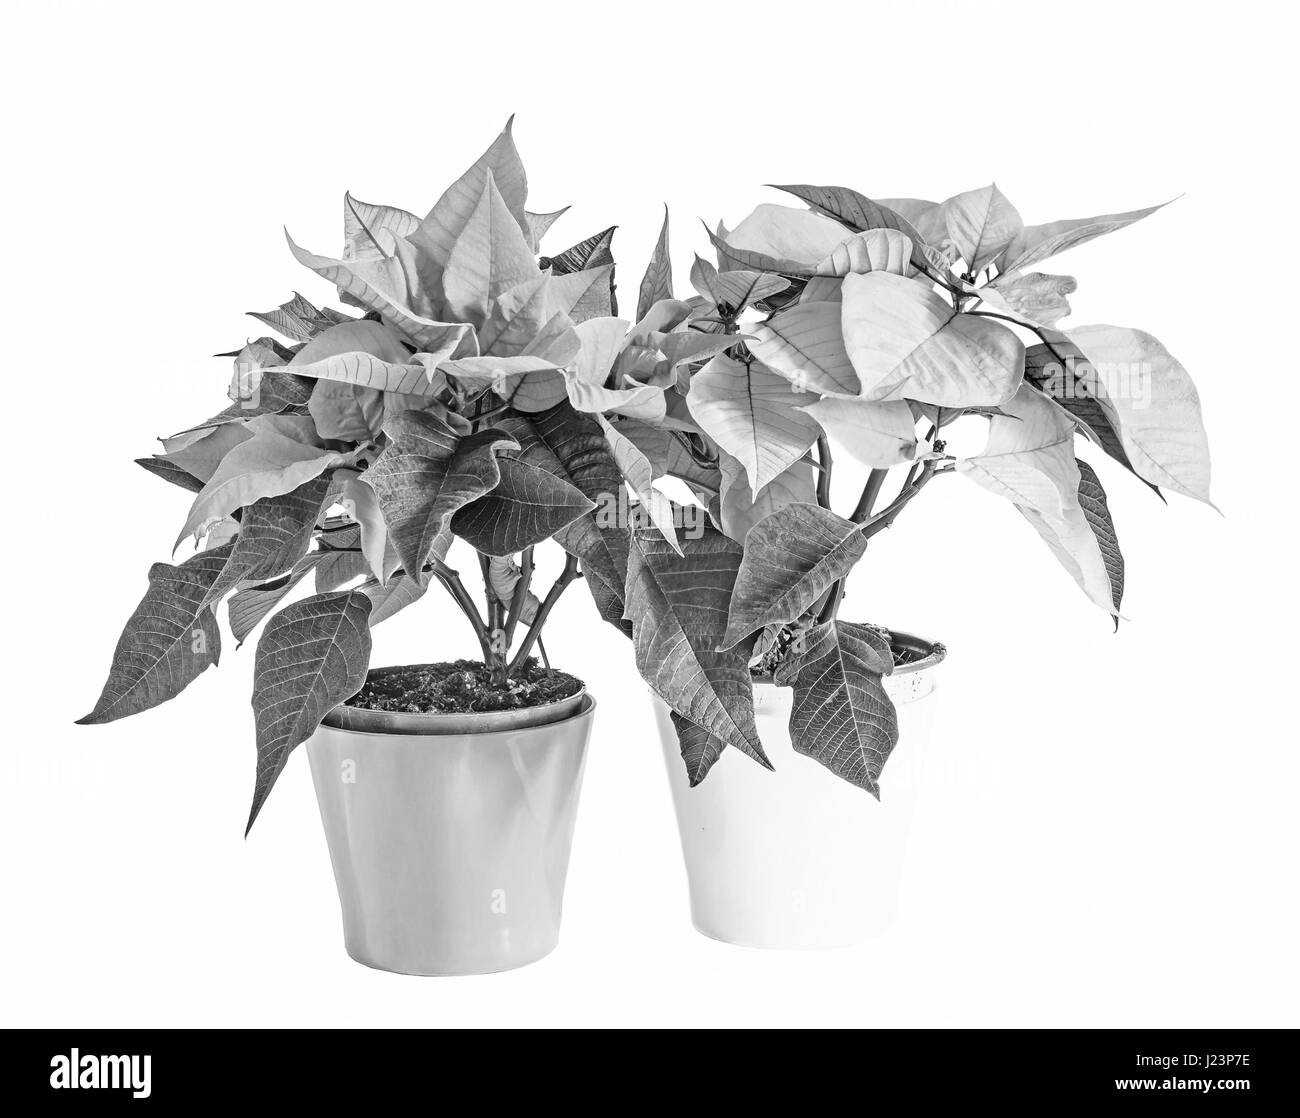 La poinsettia fiori (Euphorbia pulcherrima), il fiore del Natale, in bianco e nero e scala di grigi Foto Stock